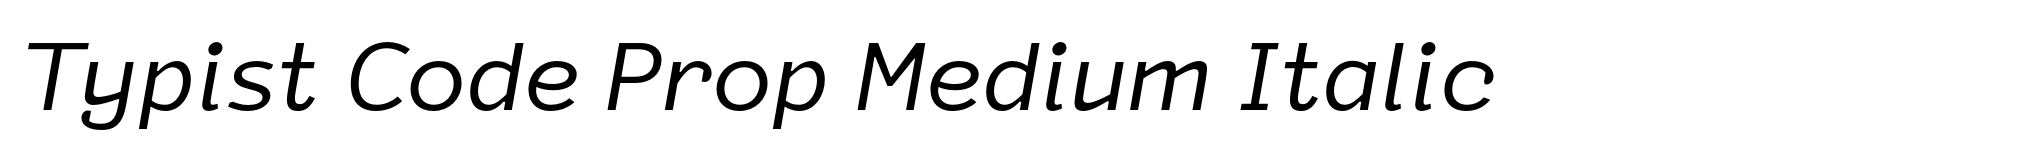 Typist Code Prop Medium Italic image